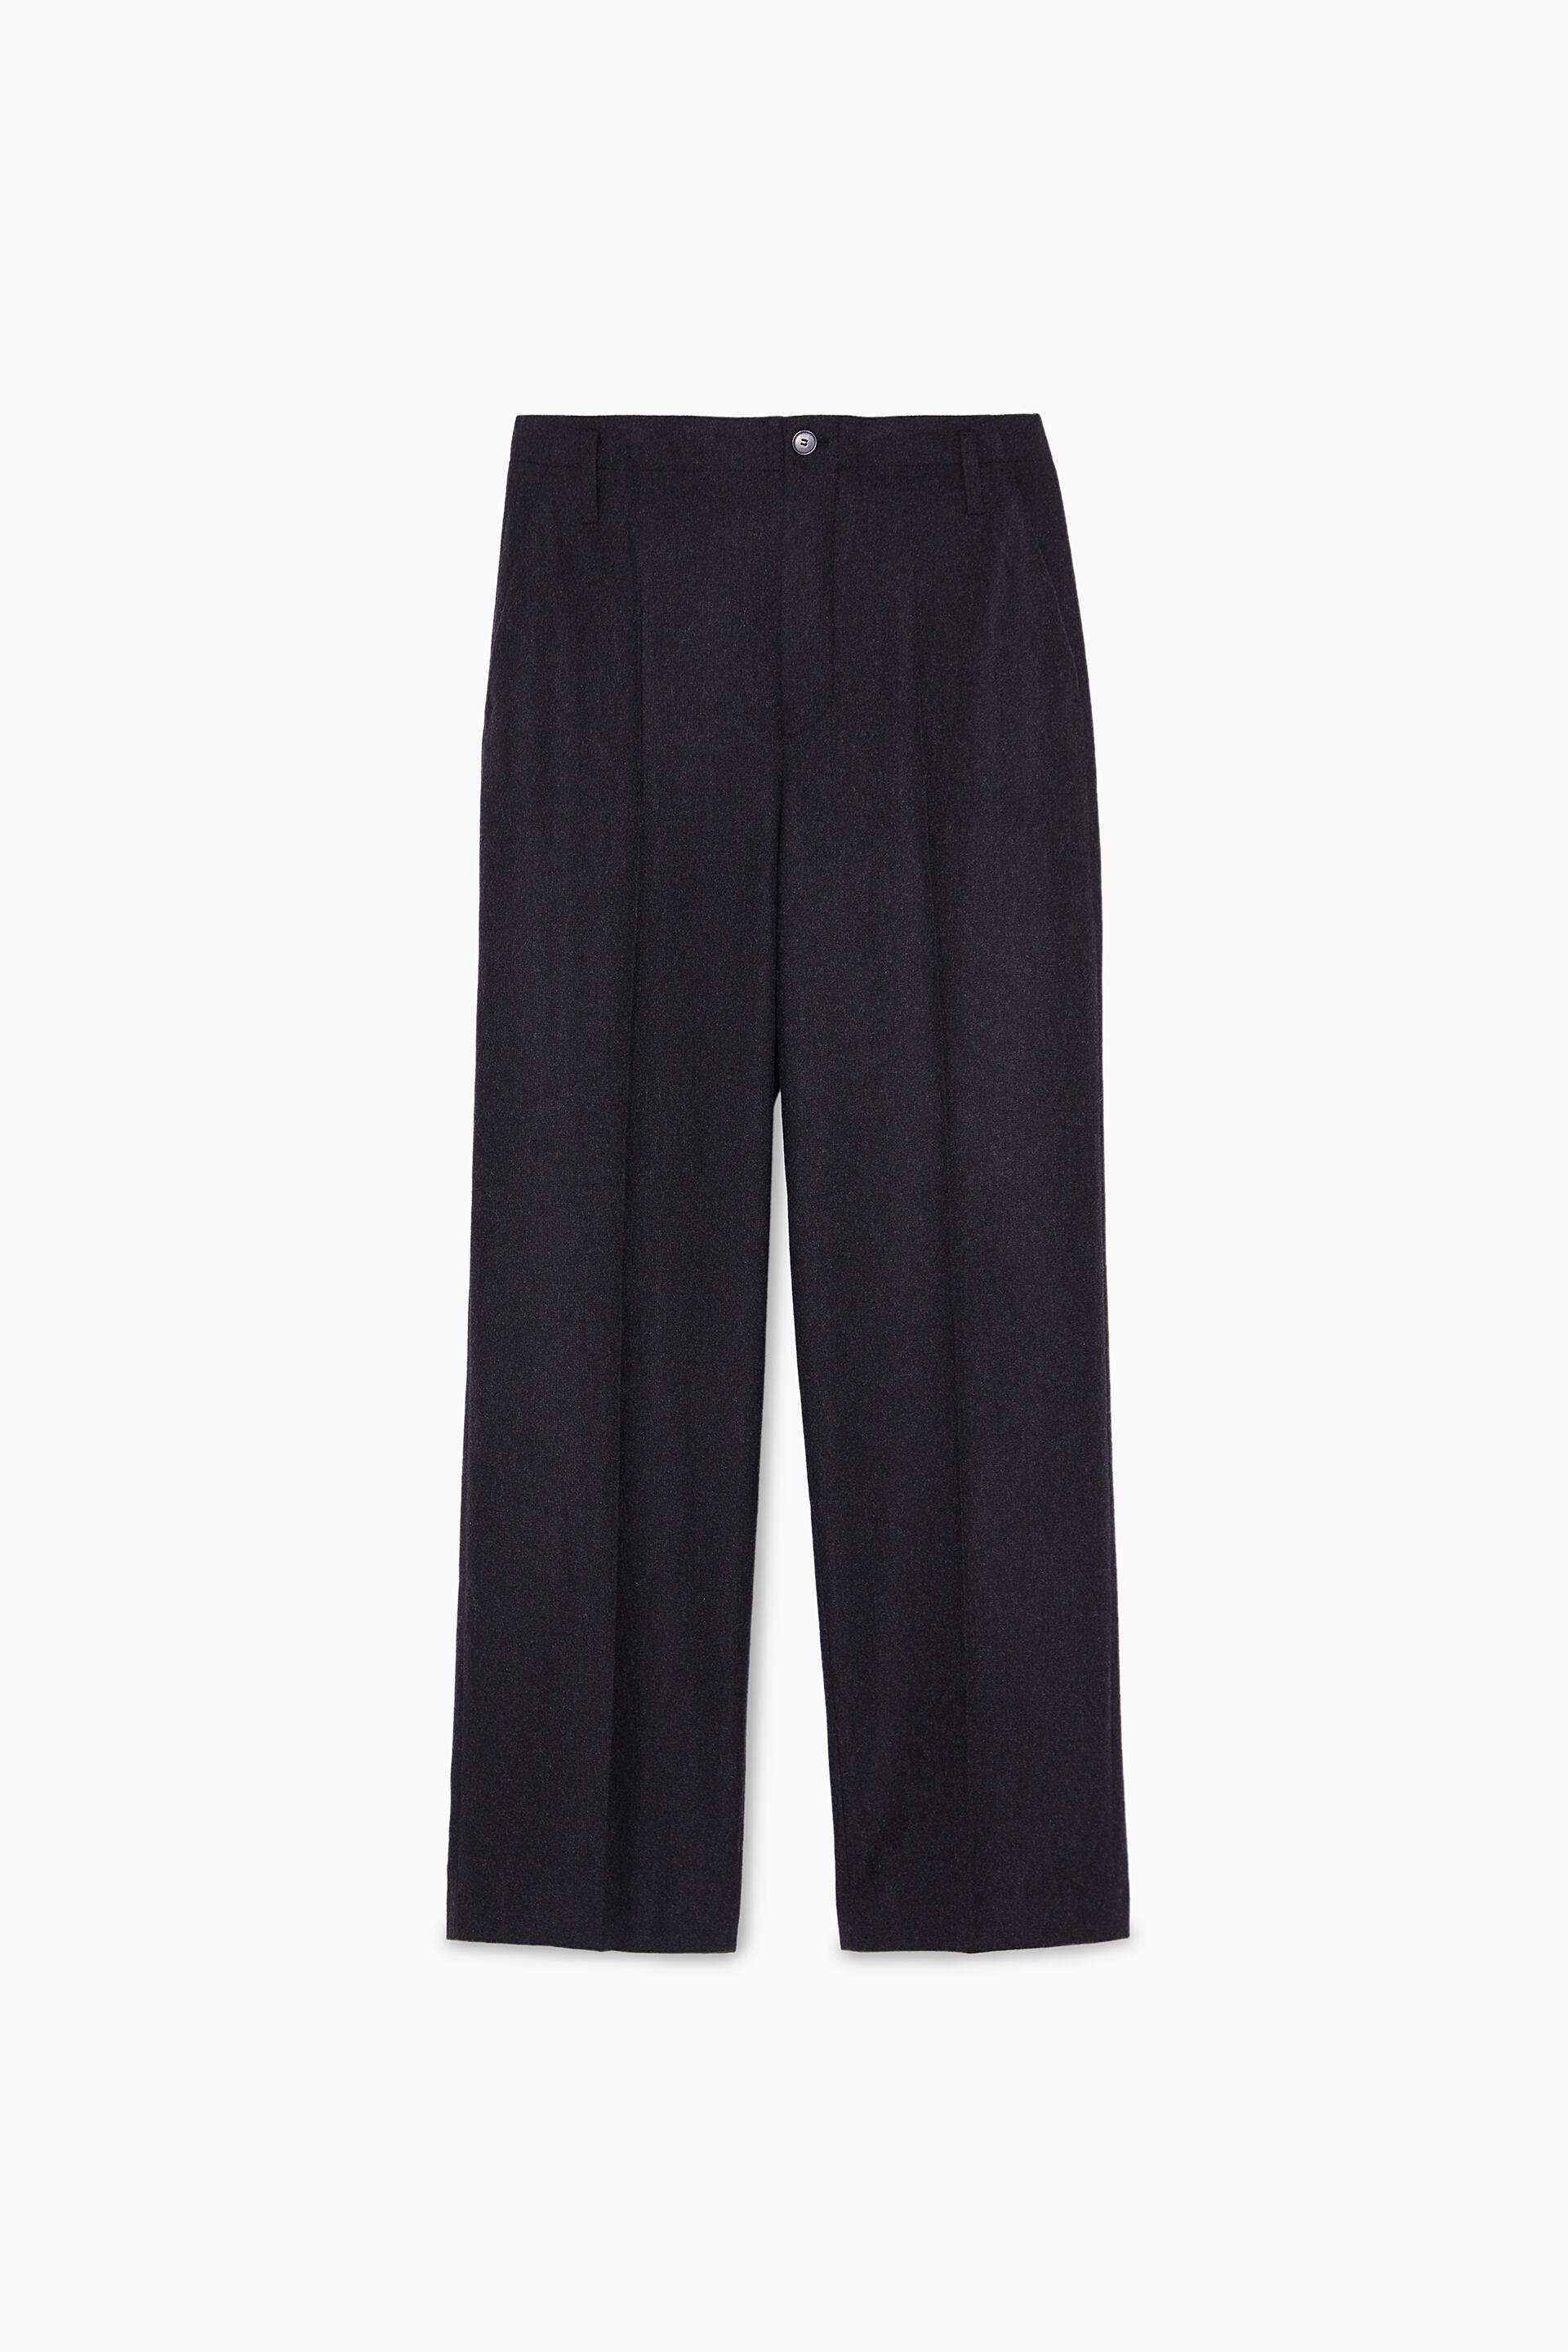 брюки в мужском стиле, лимитированная коллекция Антрацитово-серый Zara